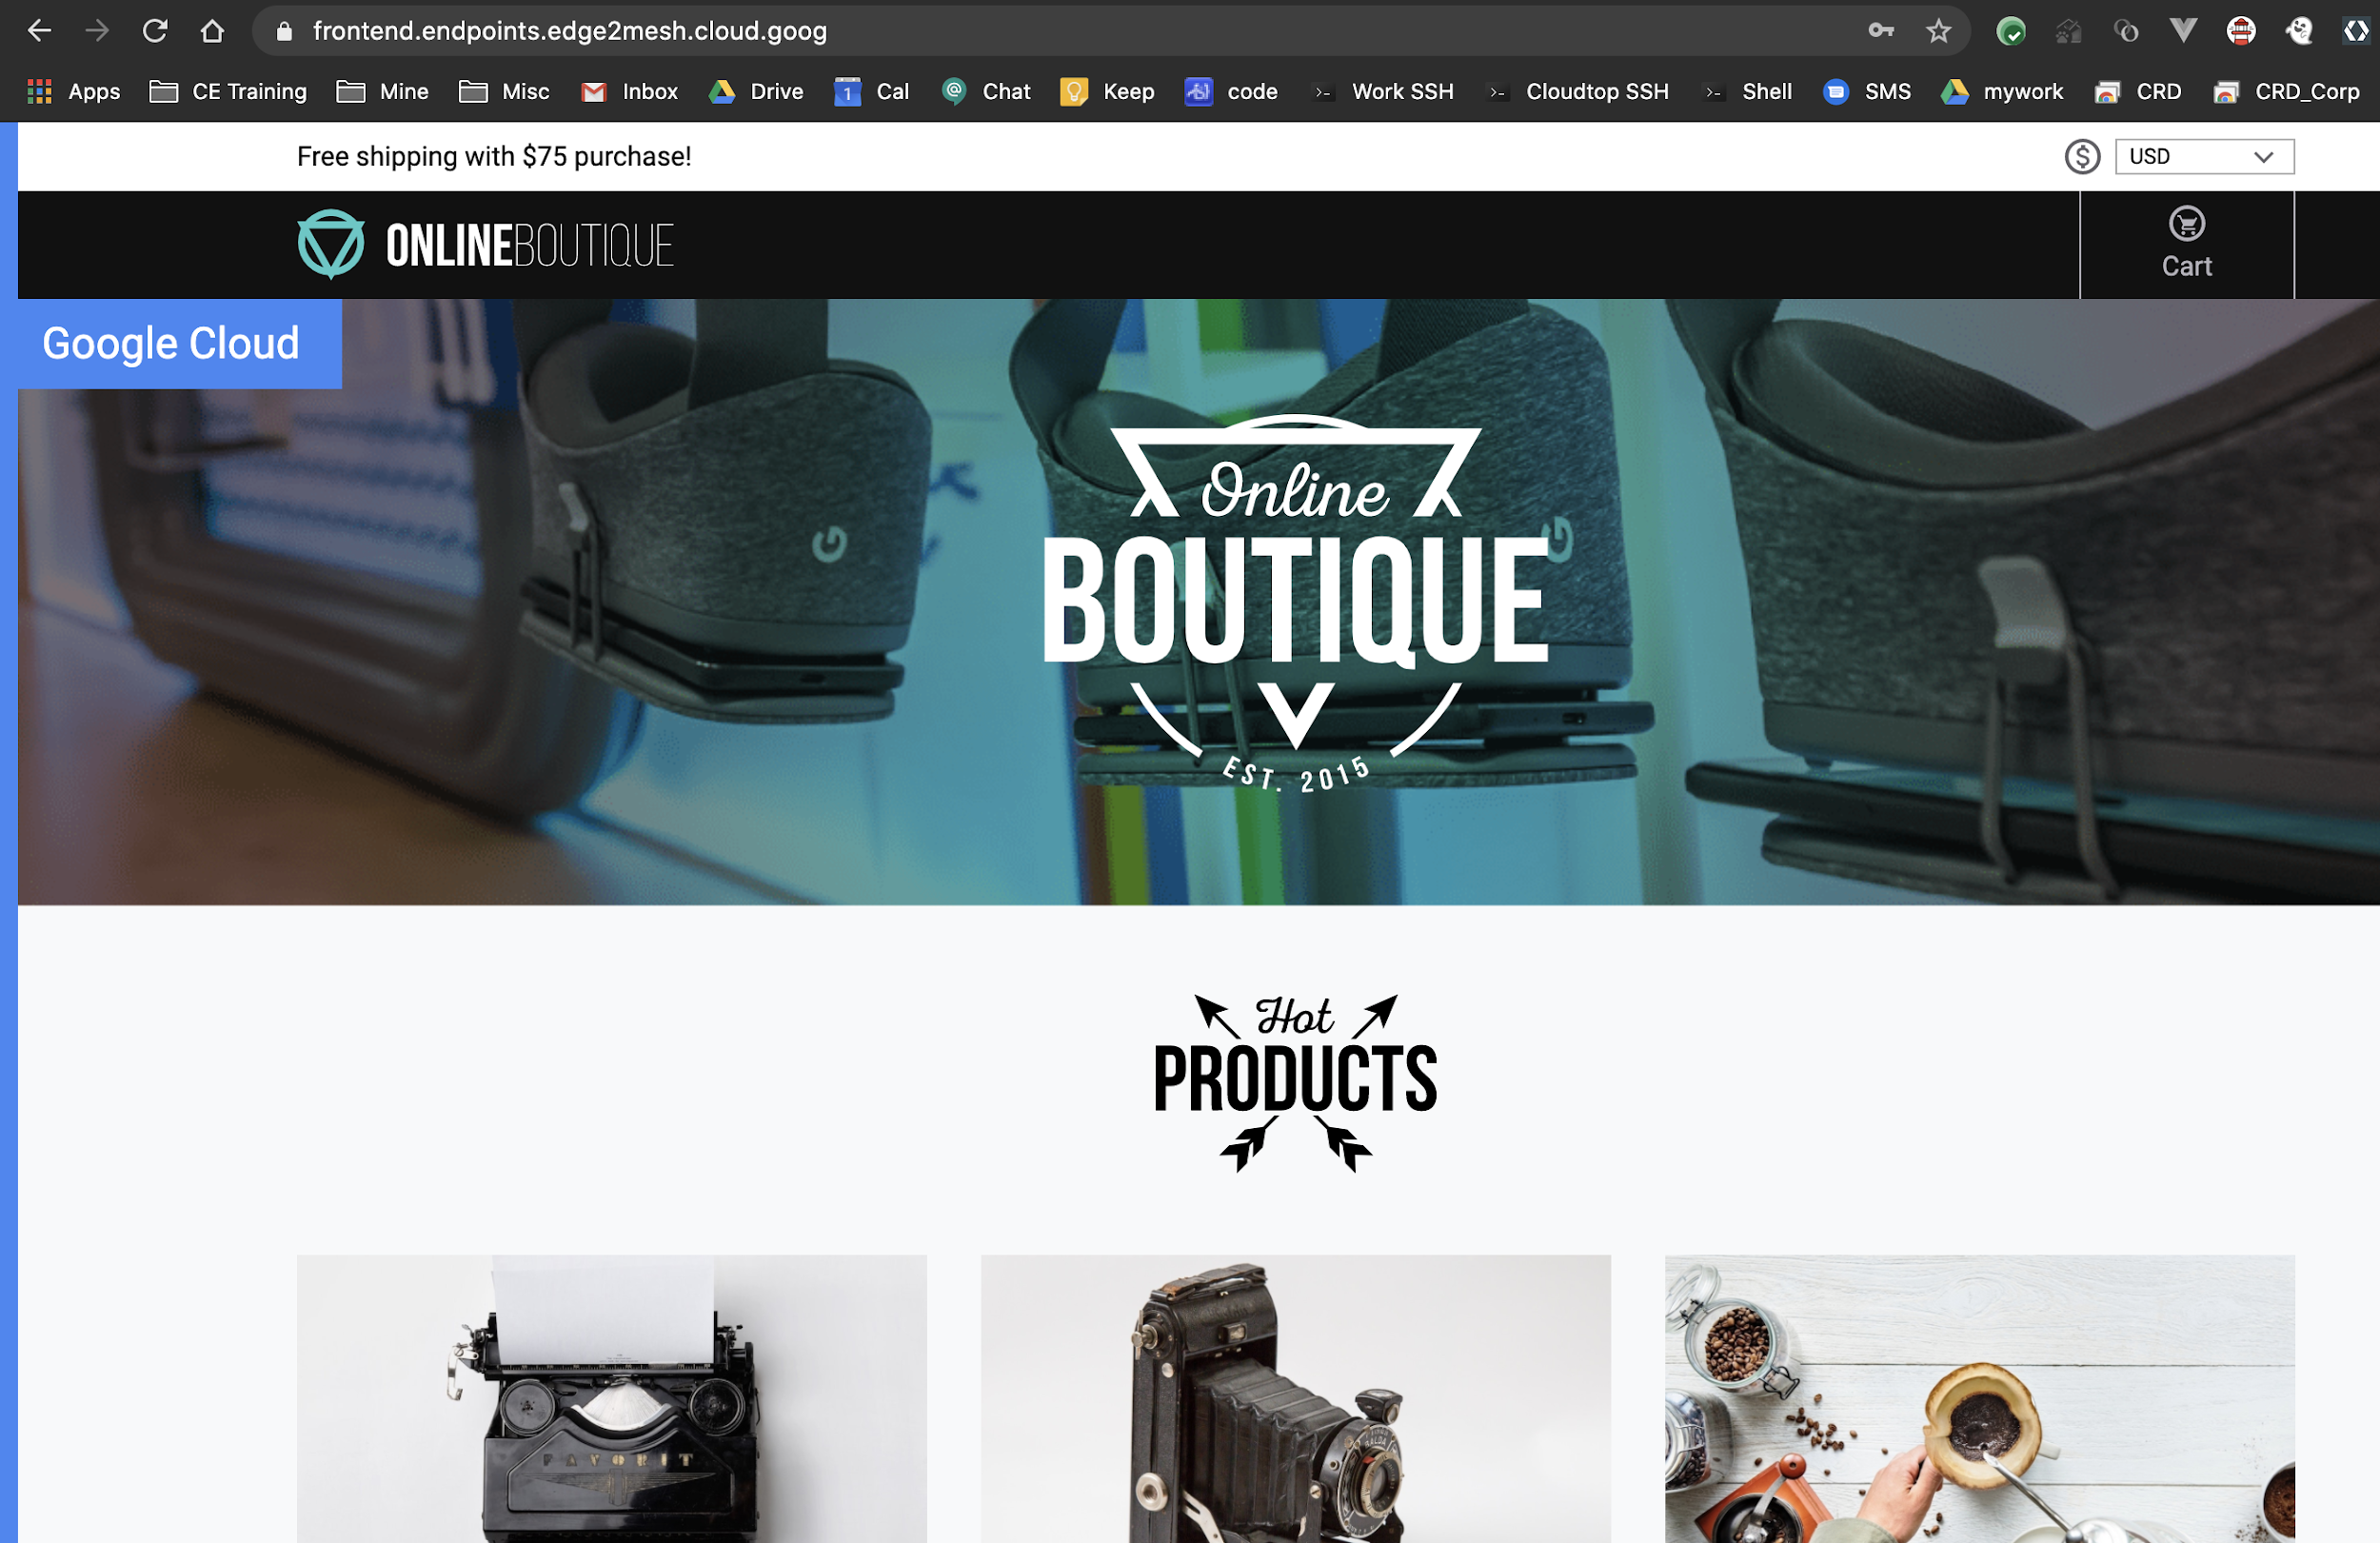 Produtos mostrados na página inicial da Online Boutique.